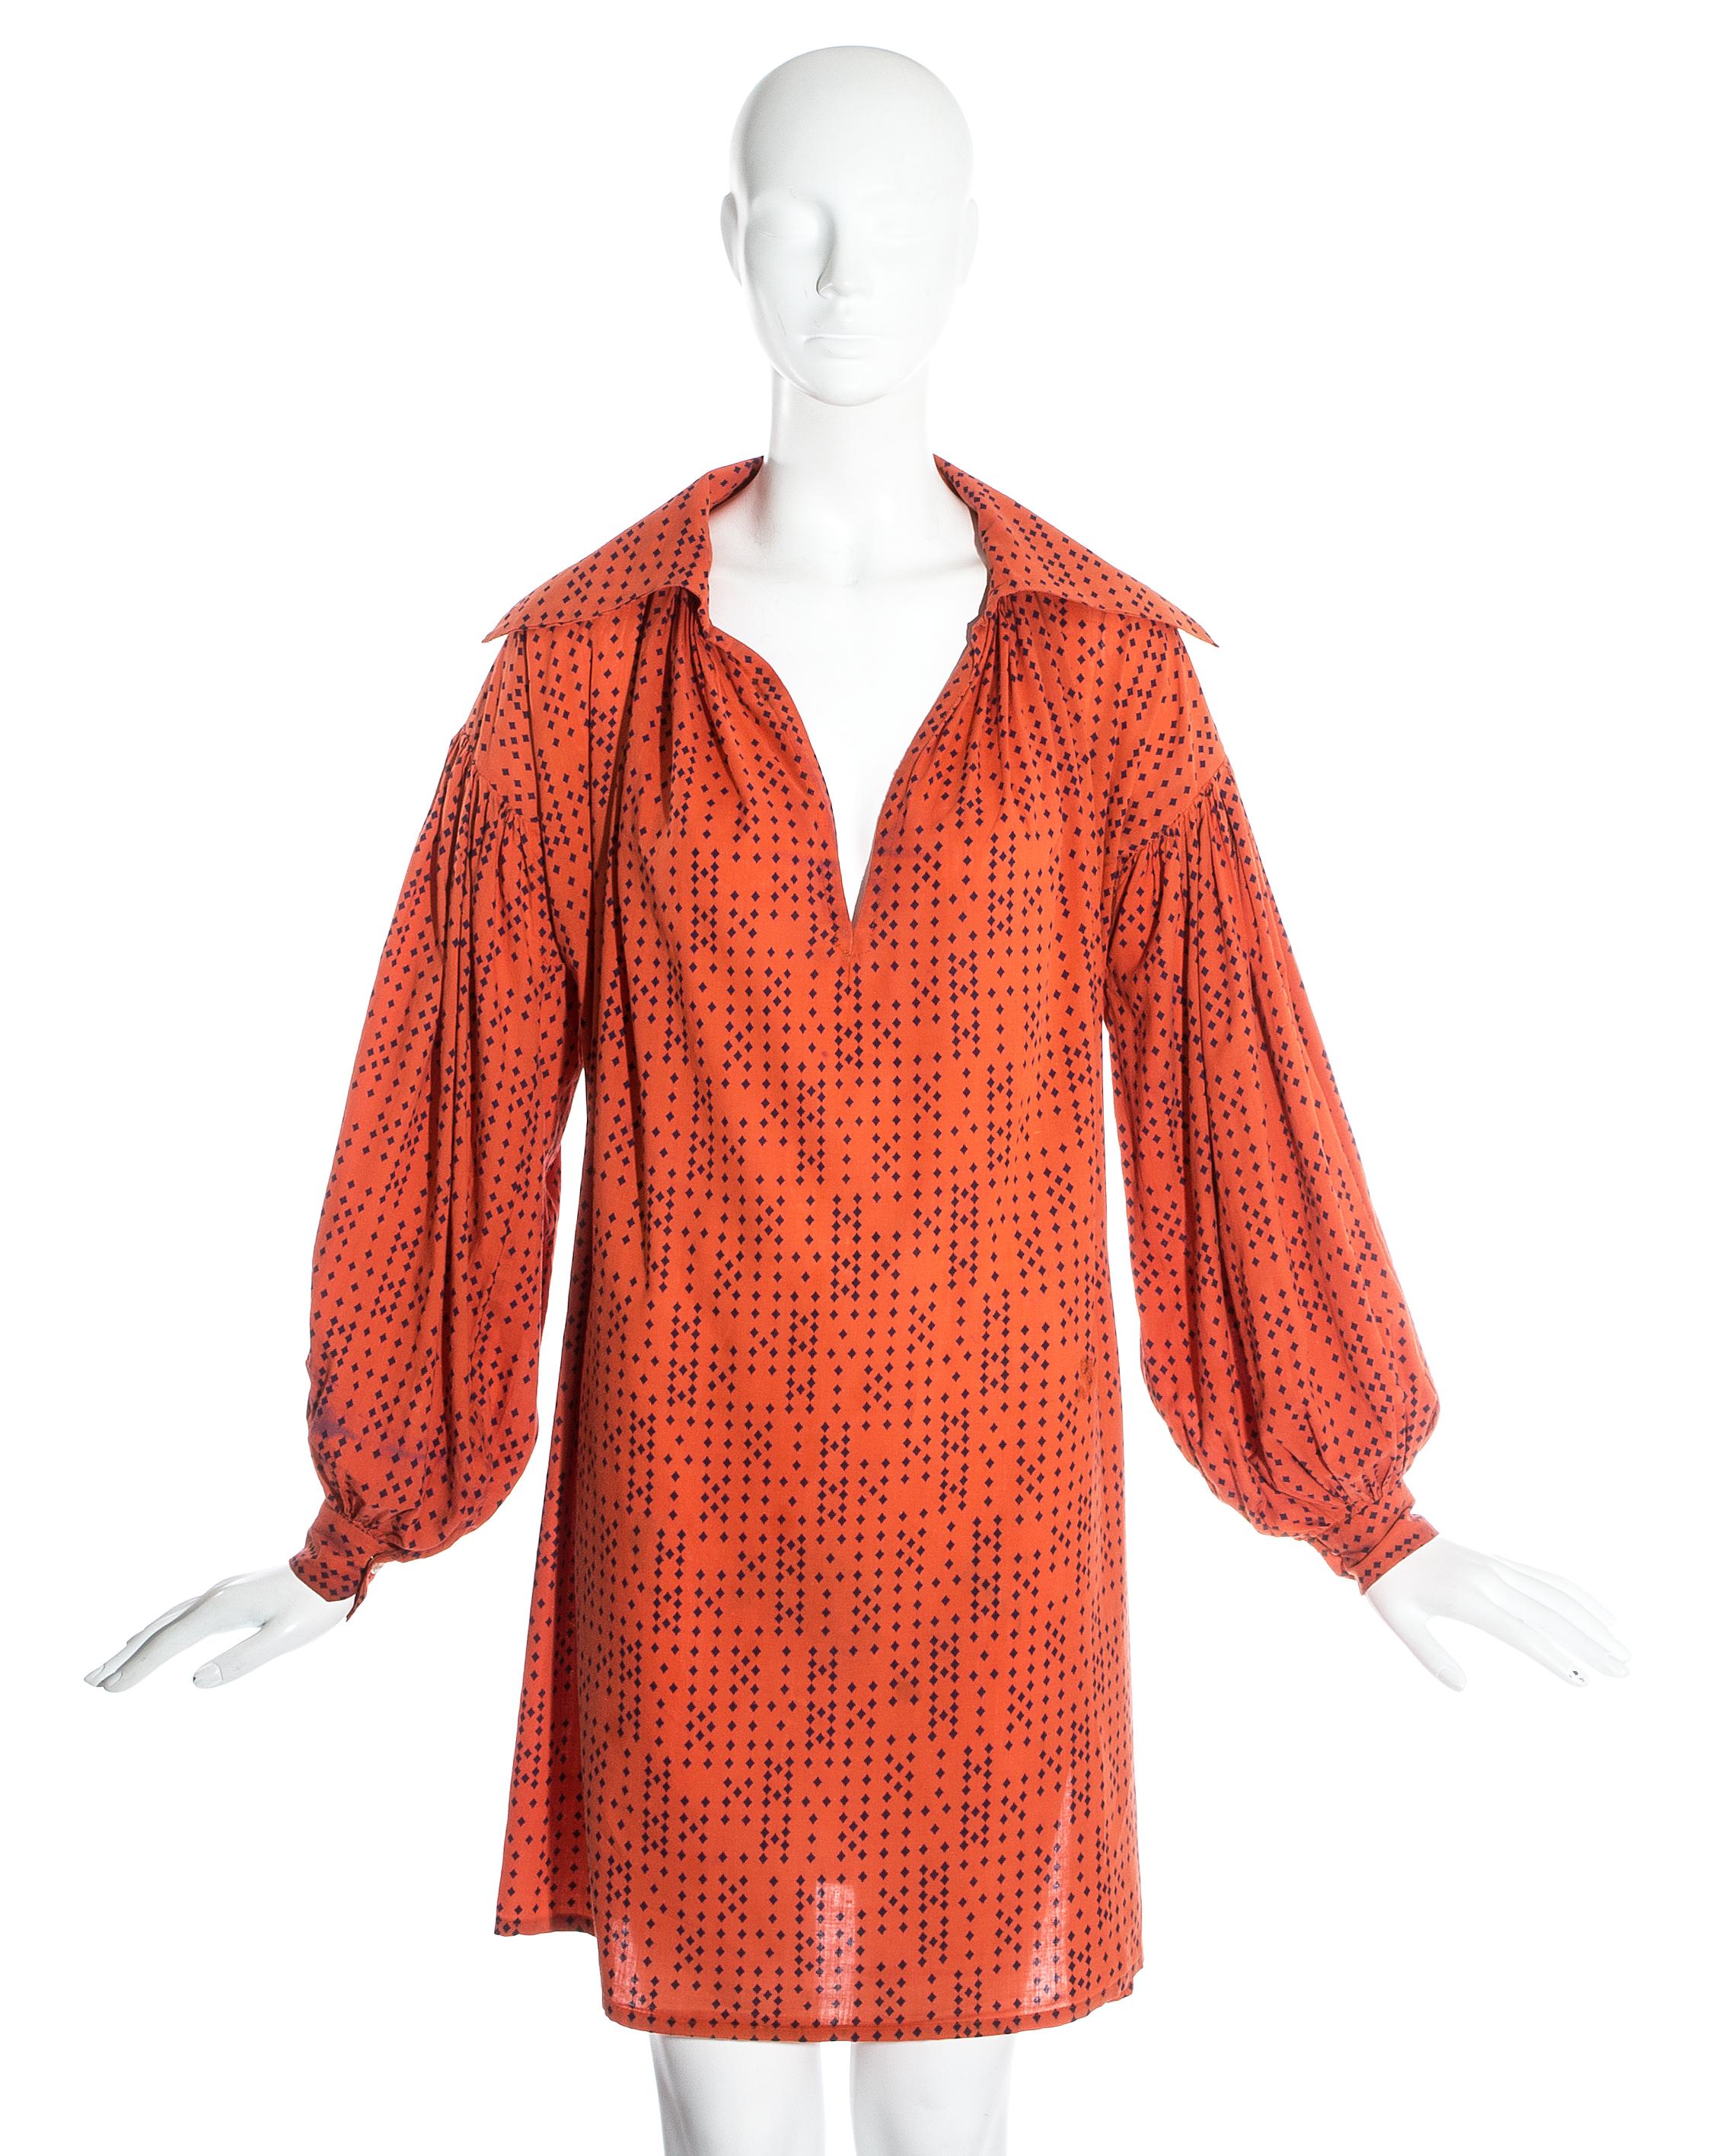 Worlds End von Vivienne Westwood und Malcolm McLaren; orangefarbene Bluse aus Baumwolle in Übergröße.

Piraten